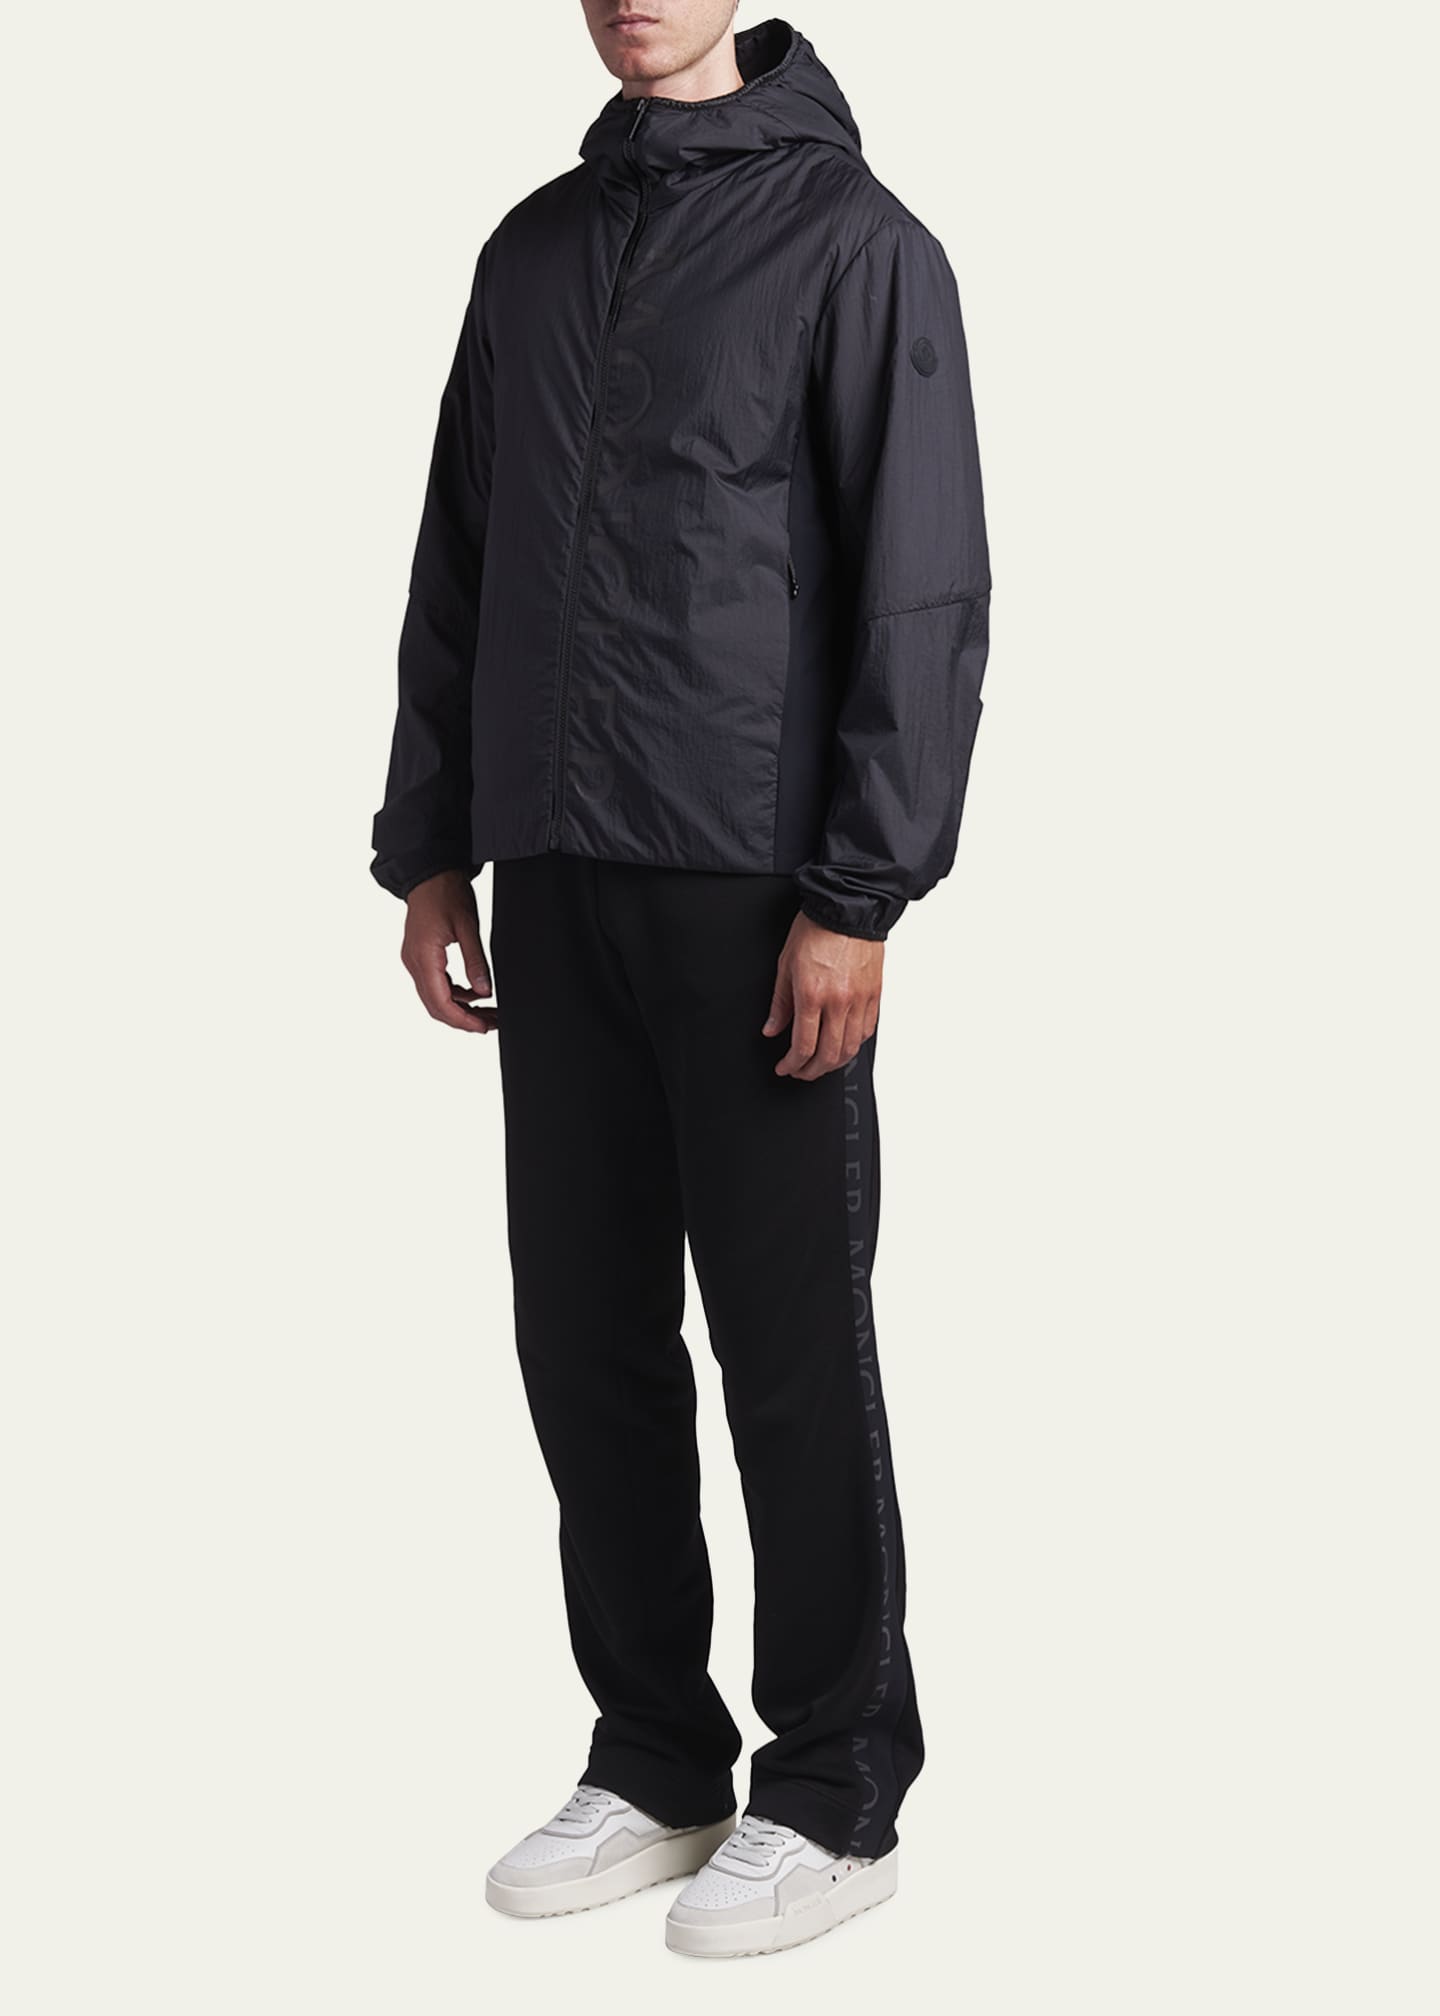 Moncler Men's Ichiro Wind-Resistant Hooded Jacket - Bergdorf Goodman